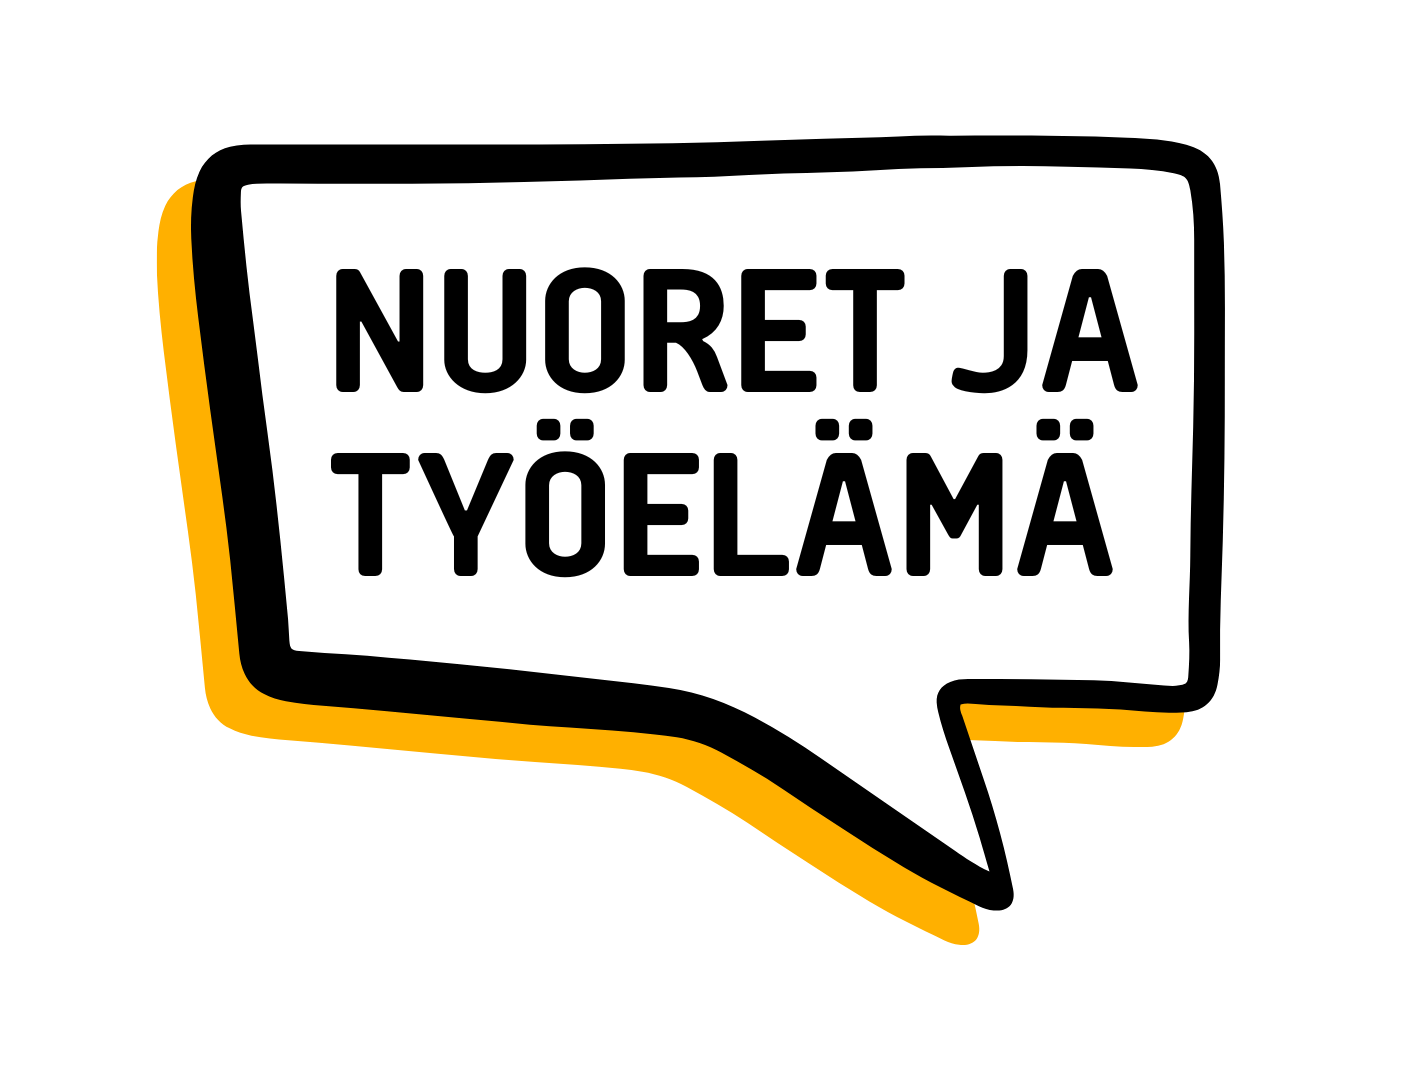 nuoret ja työelämä logo